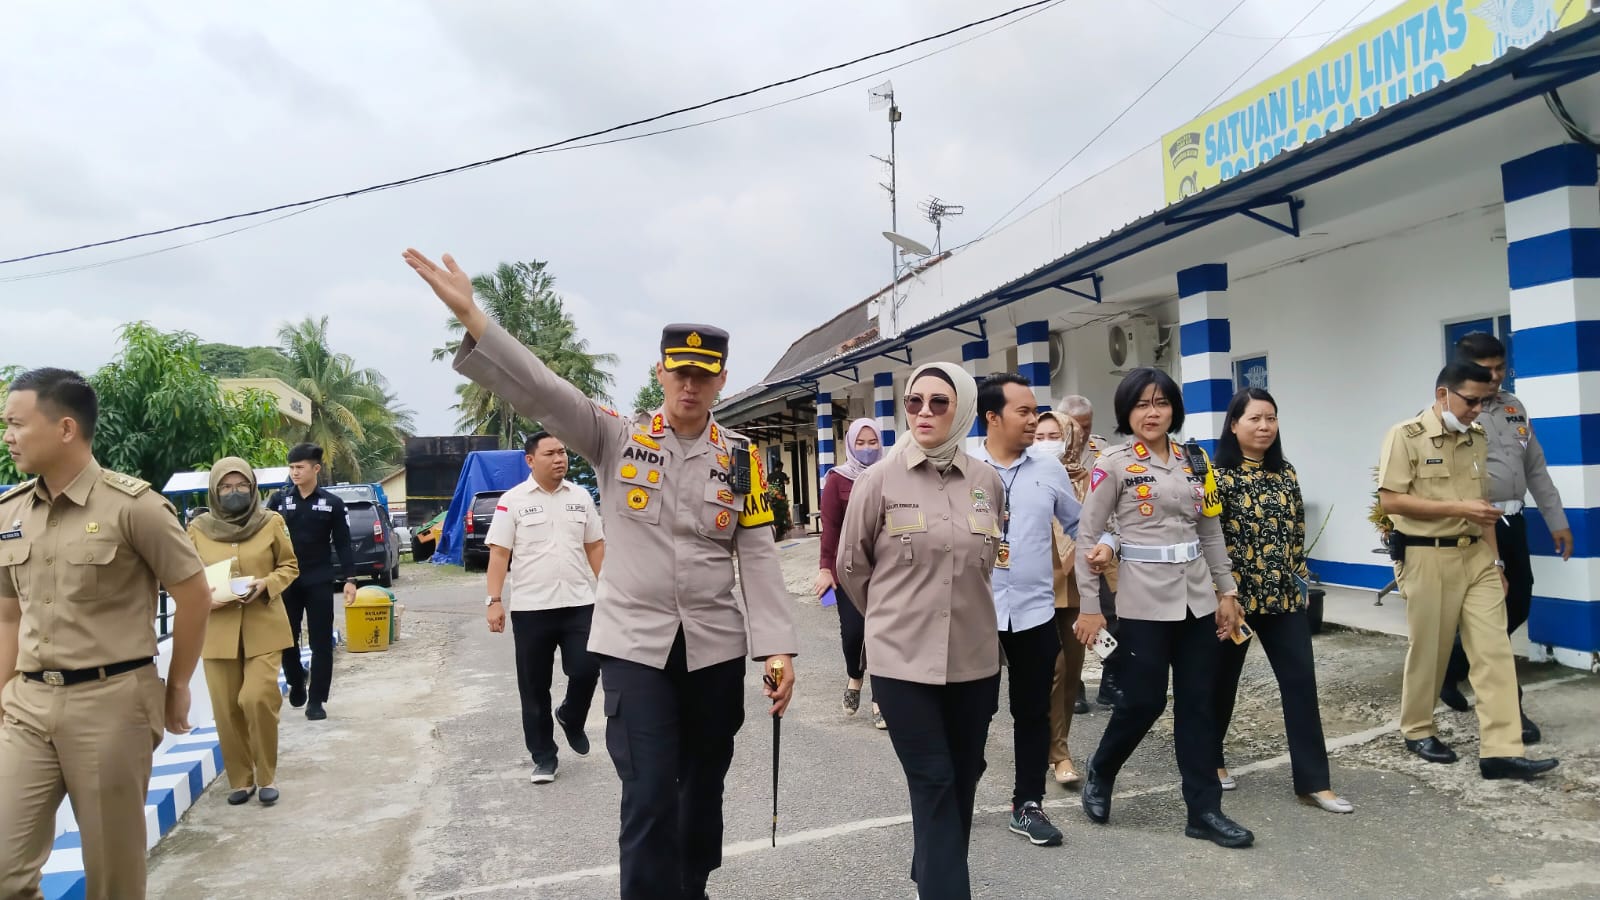 Terima Kunjungan Ketua DPRD Provinsi Sumsel, Kapolres Ogan Ilir Paparkan Situasi Lalu Lintas dan Keamanan